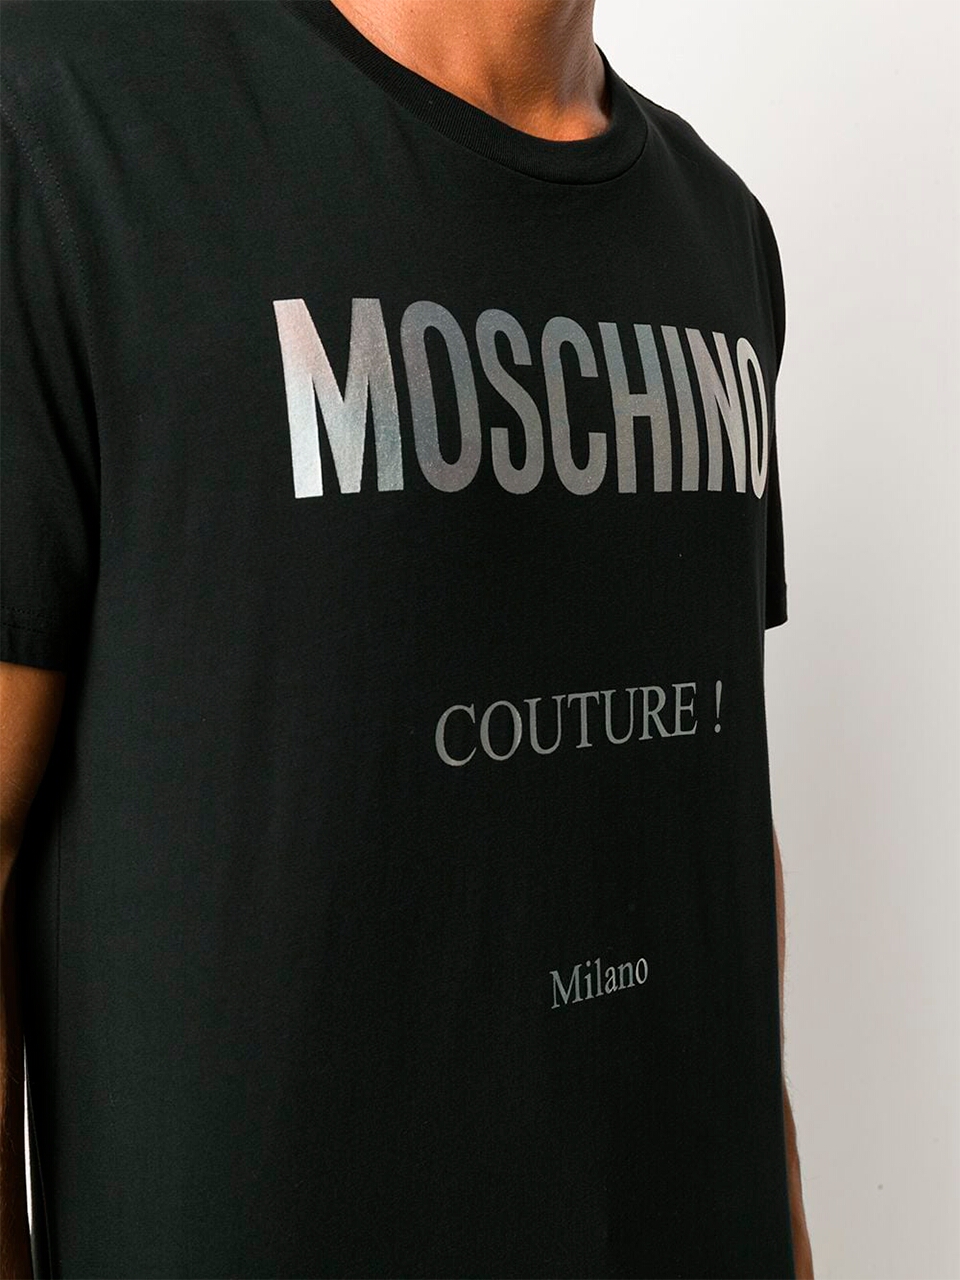 Imagem de: Camiseta Moschino Preta com Logo Couture Metalico